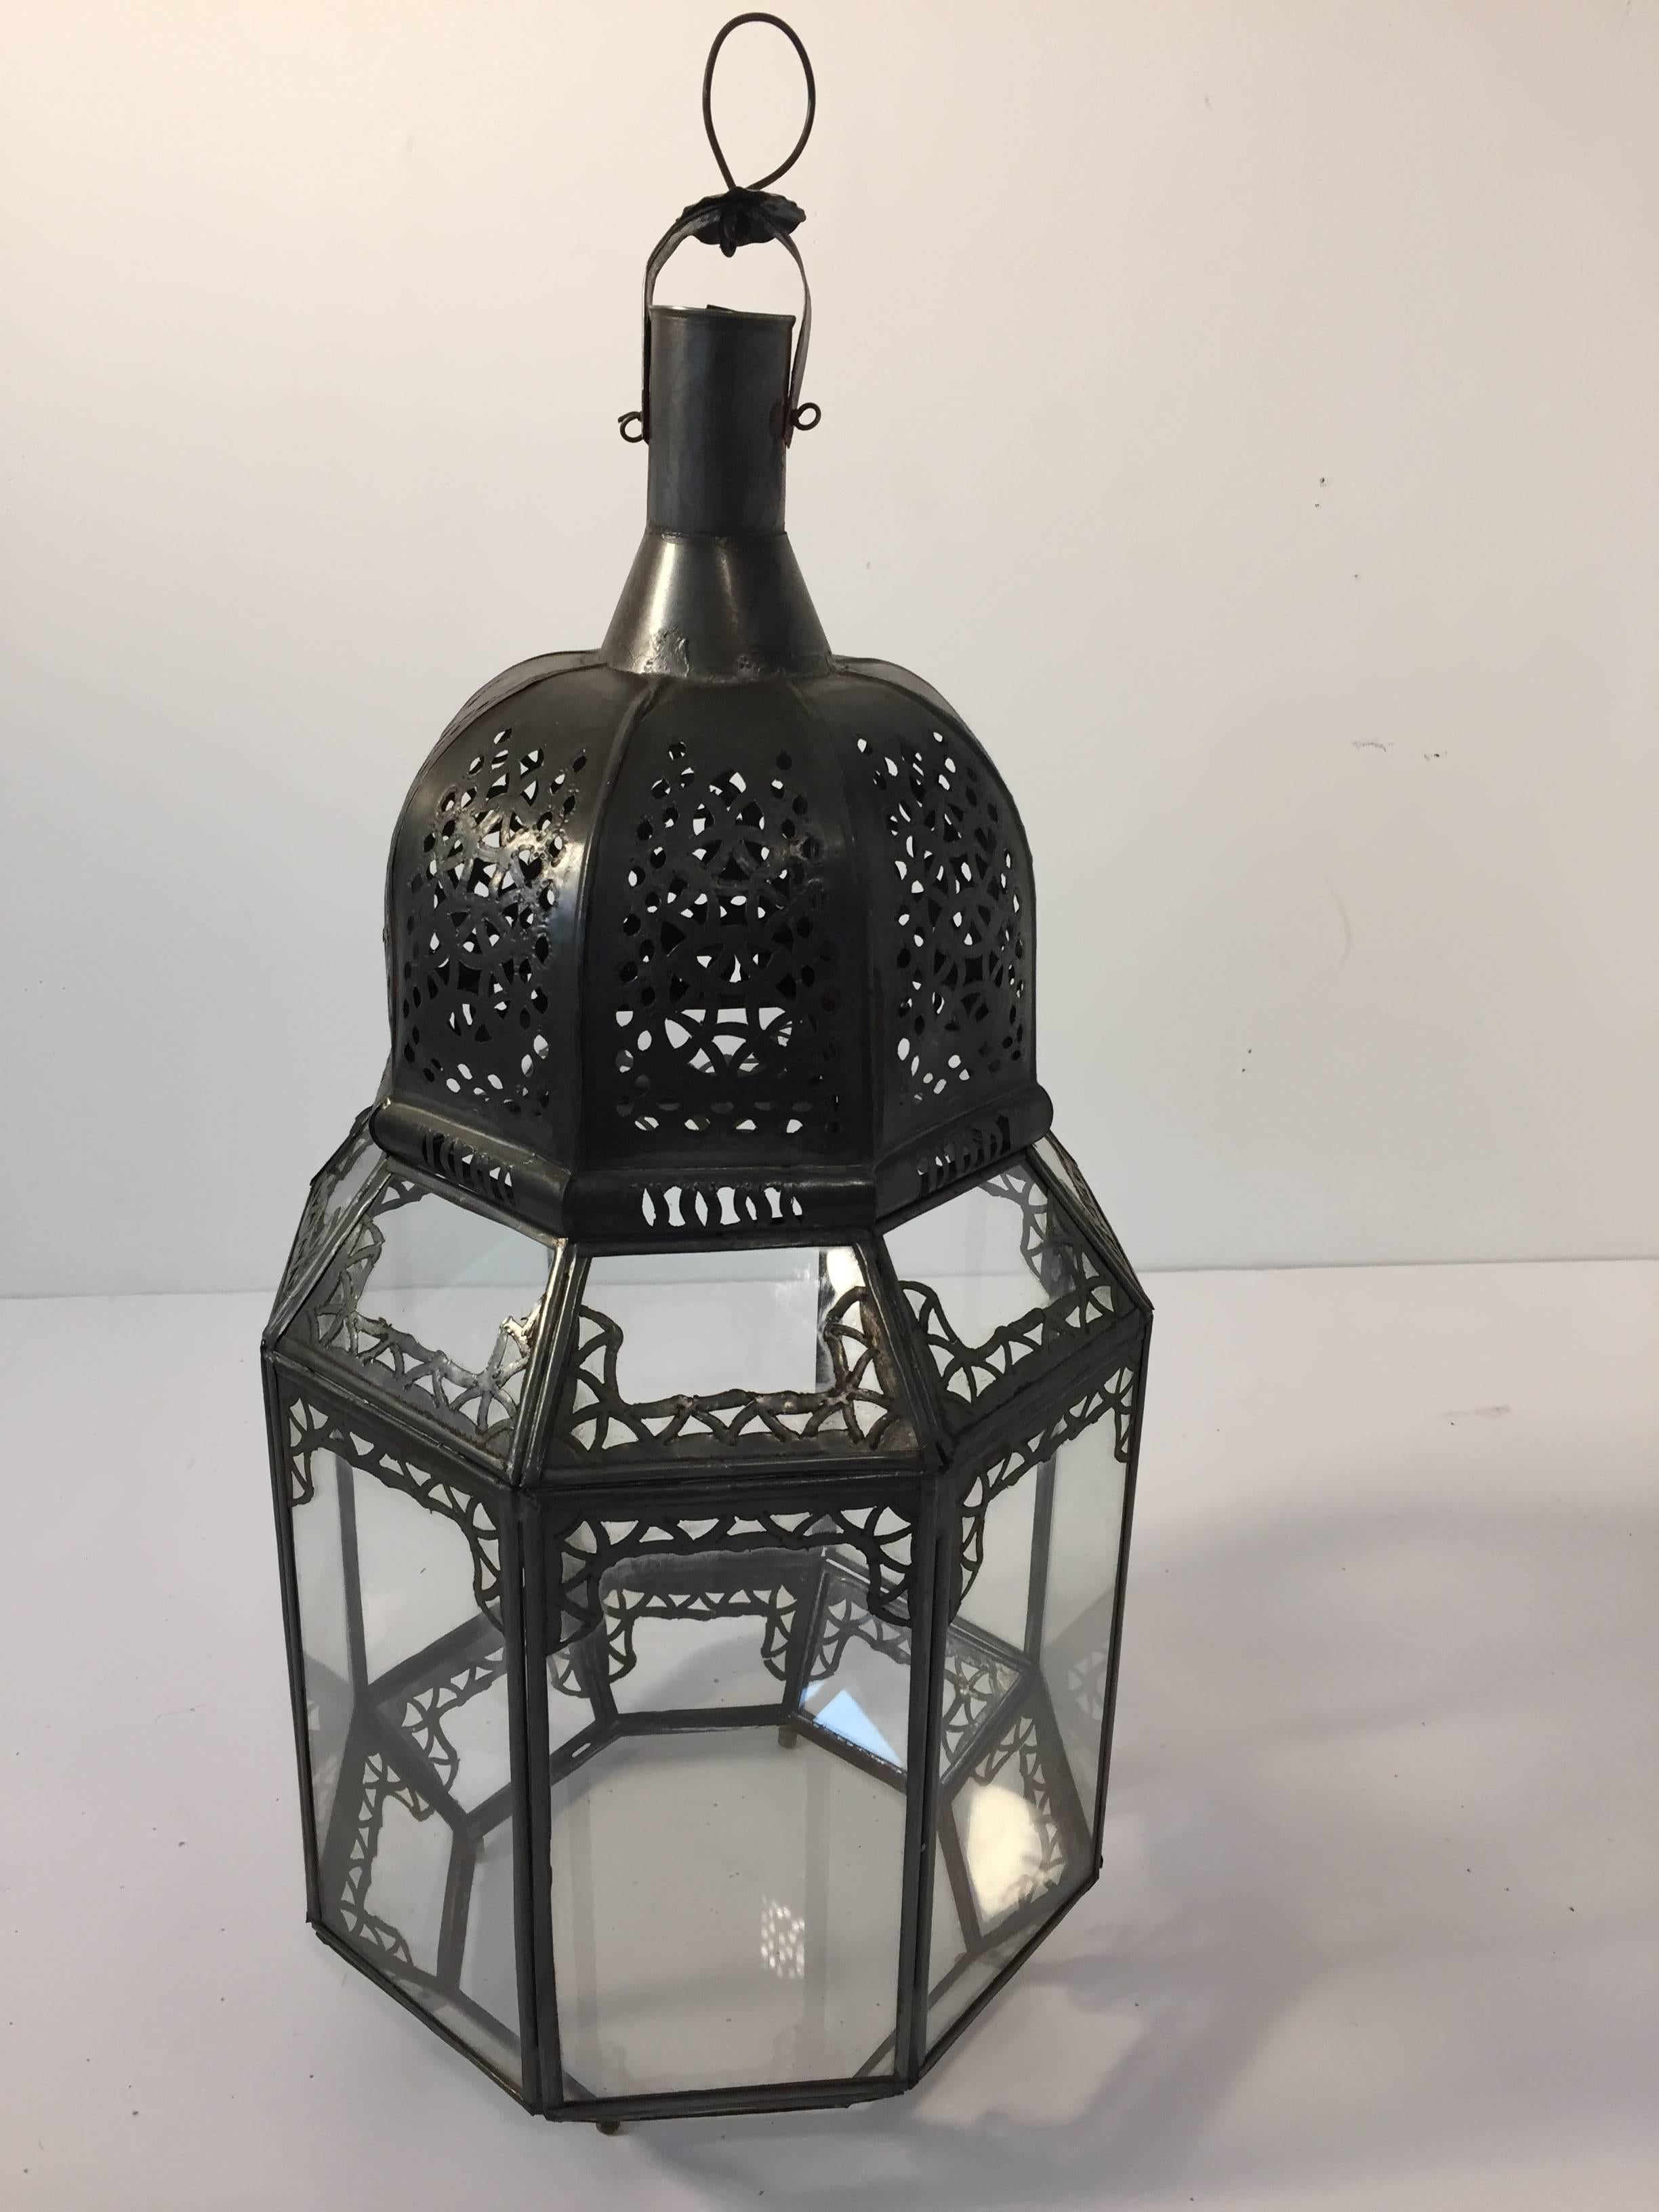 Lanterne mauresque vintage en verre clair avec filigrane en métal.
Forme octogonale, délicatement fabriquée à la main par des artisans au Maroc.
Finition en métal couleur bronze.
Peut être utilisée avec une bougie ou reliée à l'électricité comme